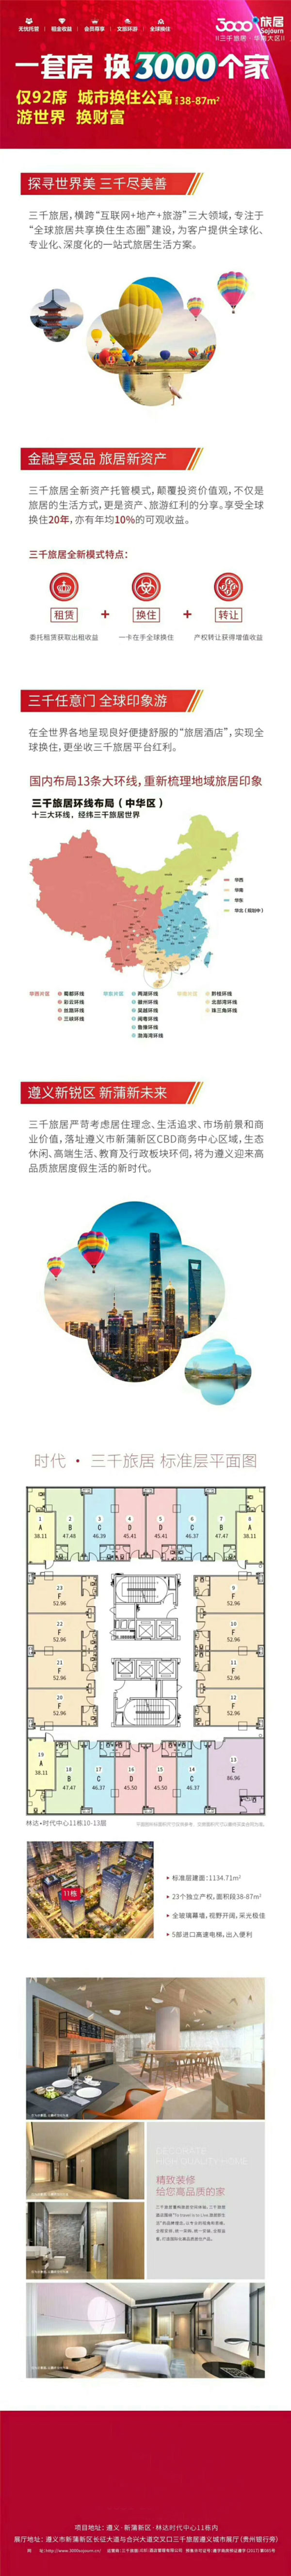 全球文旅运营商 三千旅居登陆红色遵义-中国网地产